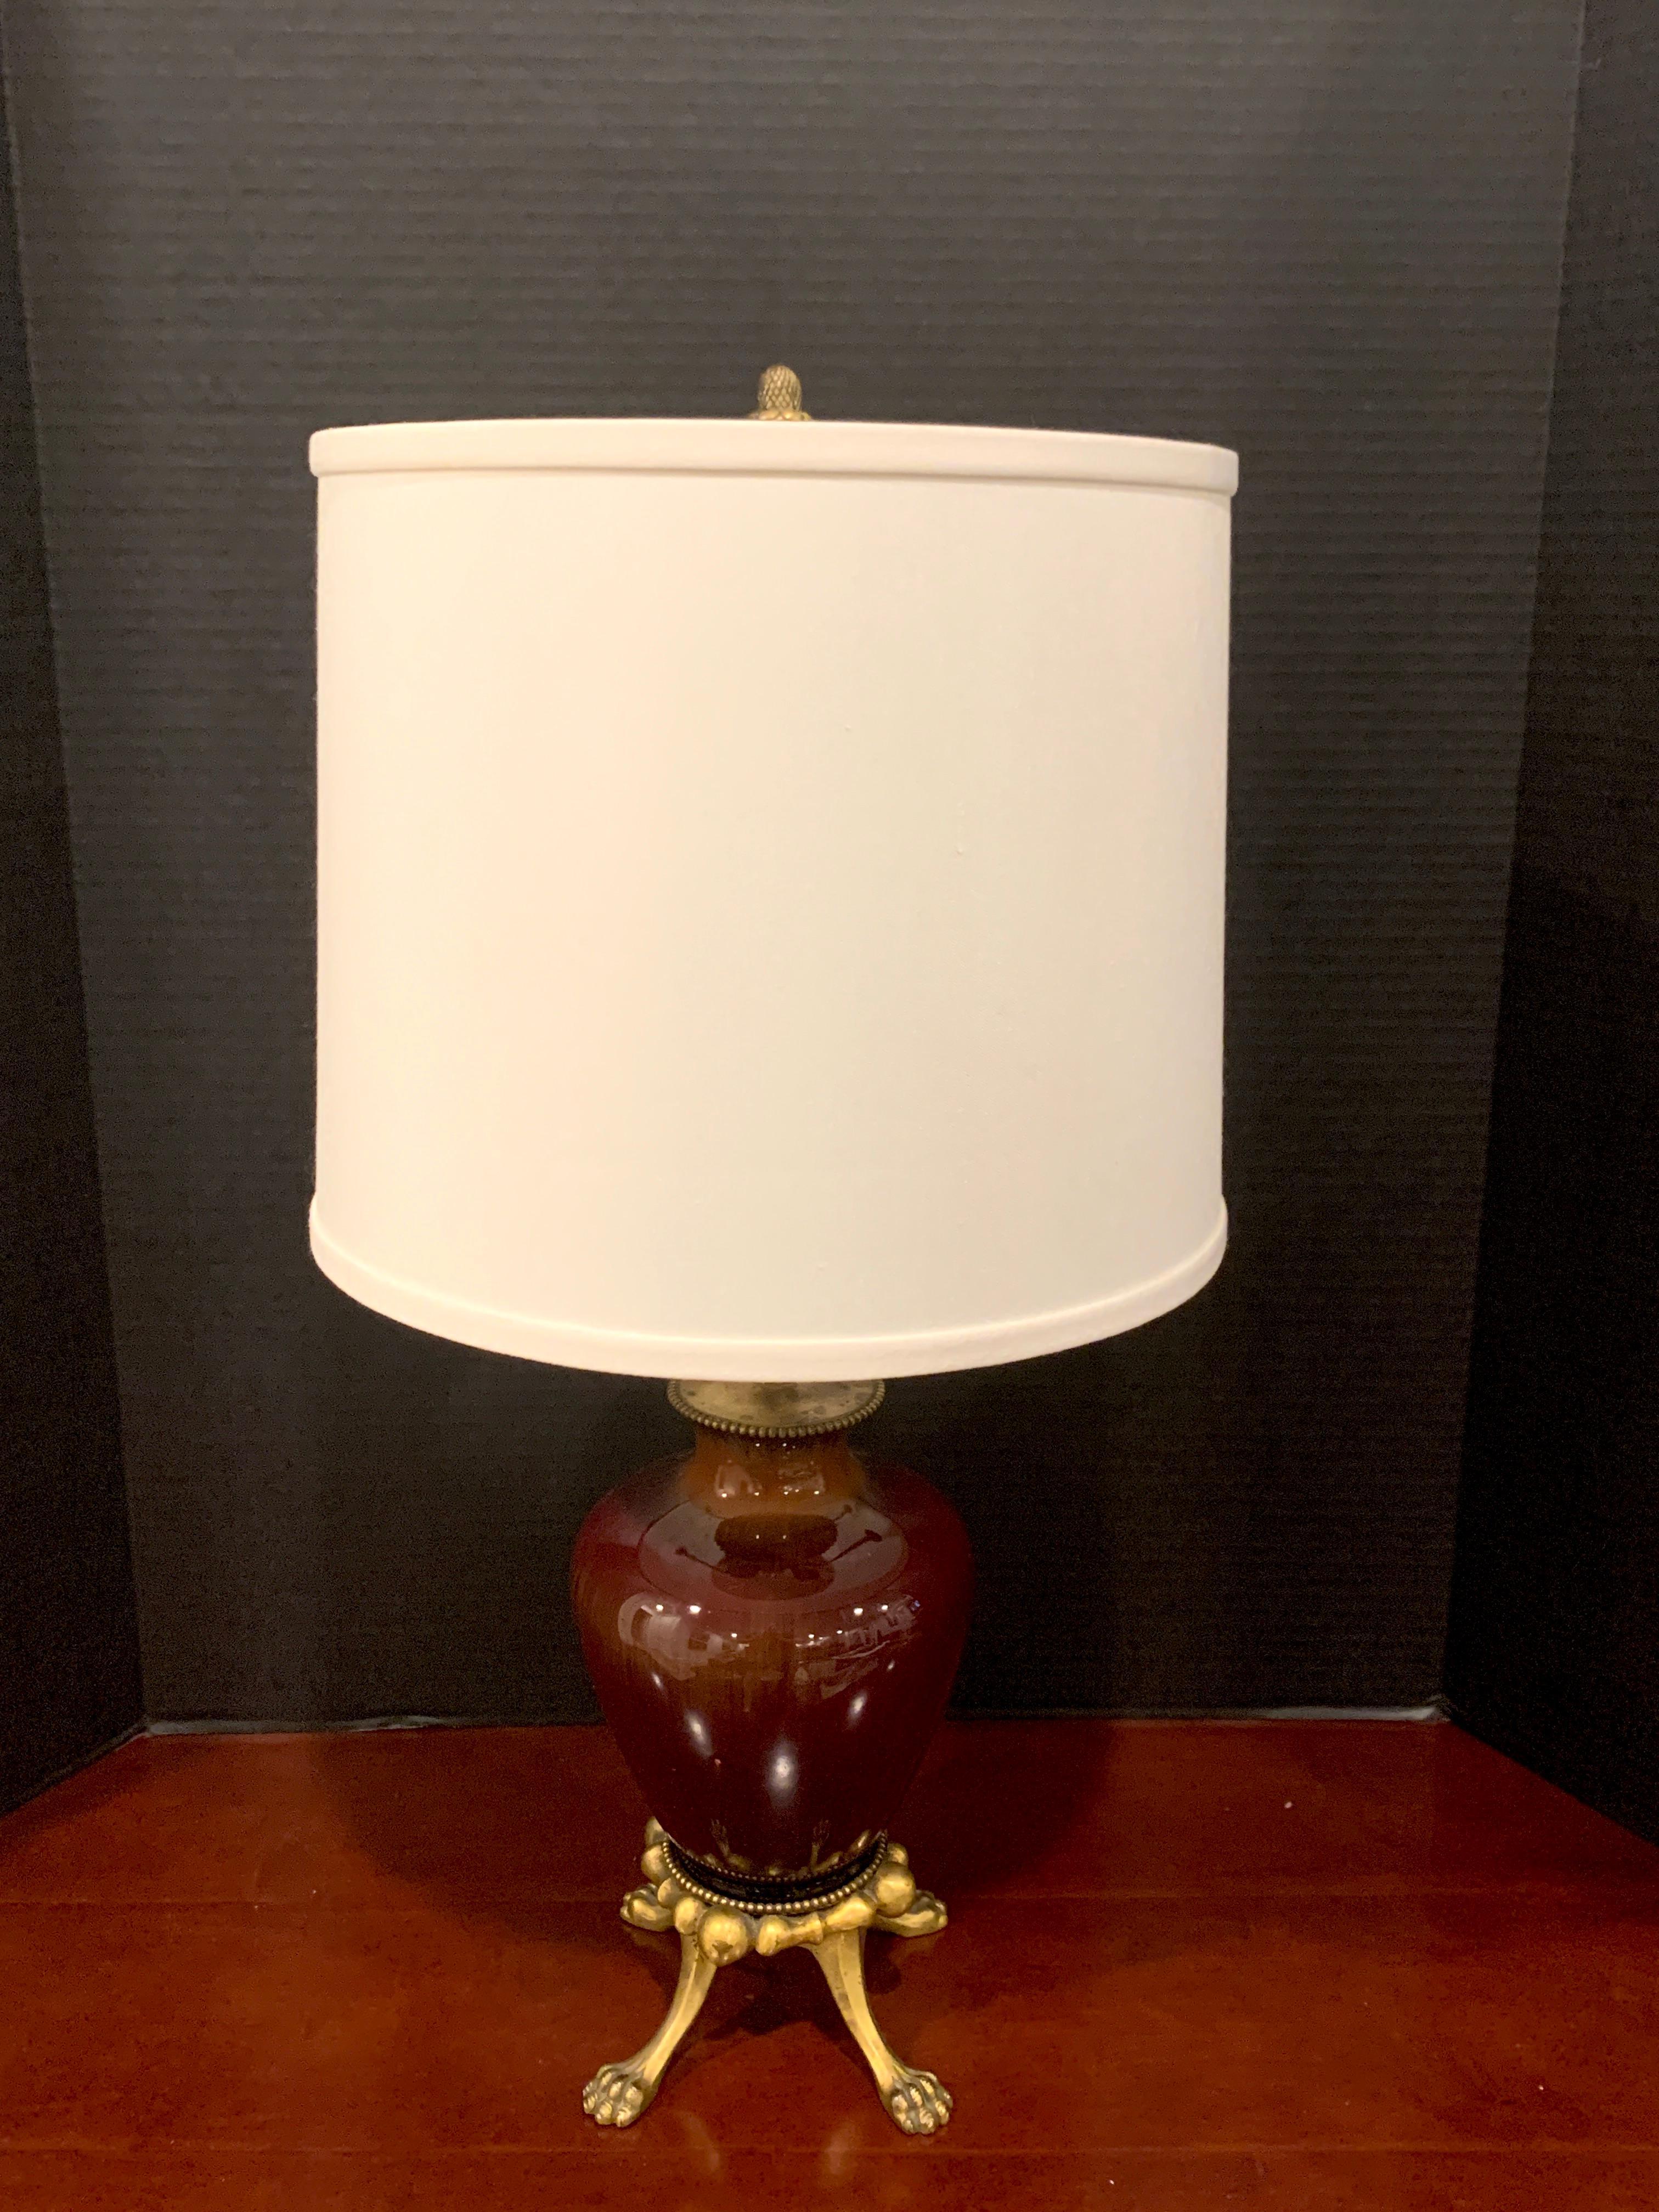 Sang de Boeuf, Ormolu Mounted Vase, von Rookwood Pottery 1936, jetzt als Lampe, Light Glaze
Schöne glasierte Vase auf vier eleganten ormolierten Tatzenfüßen, zugeschrieben E.F. Caldwell (Ormolu)
Maße: 21